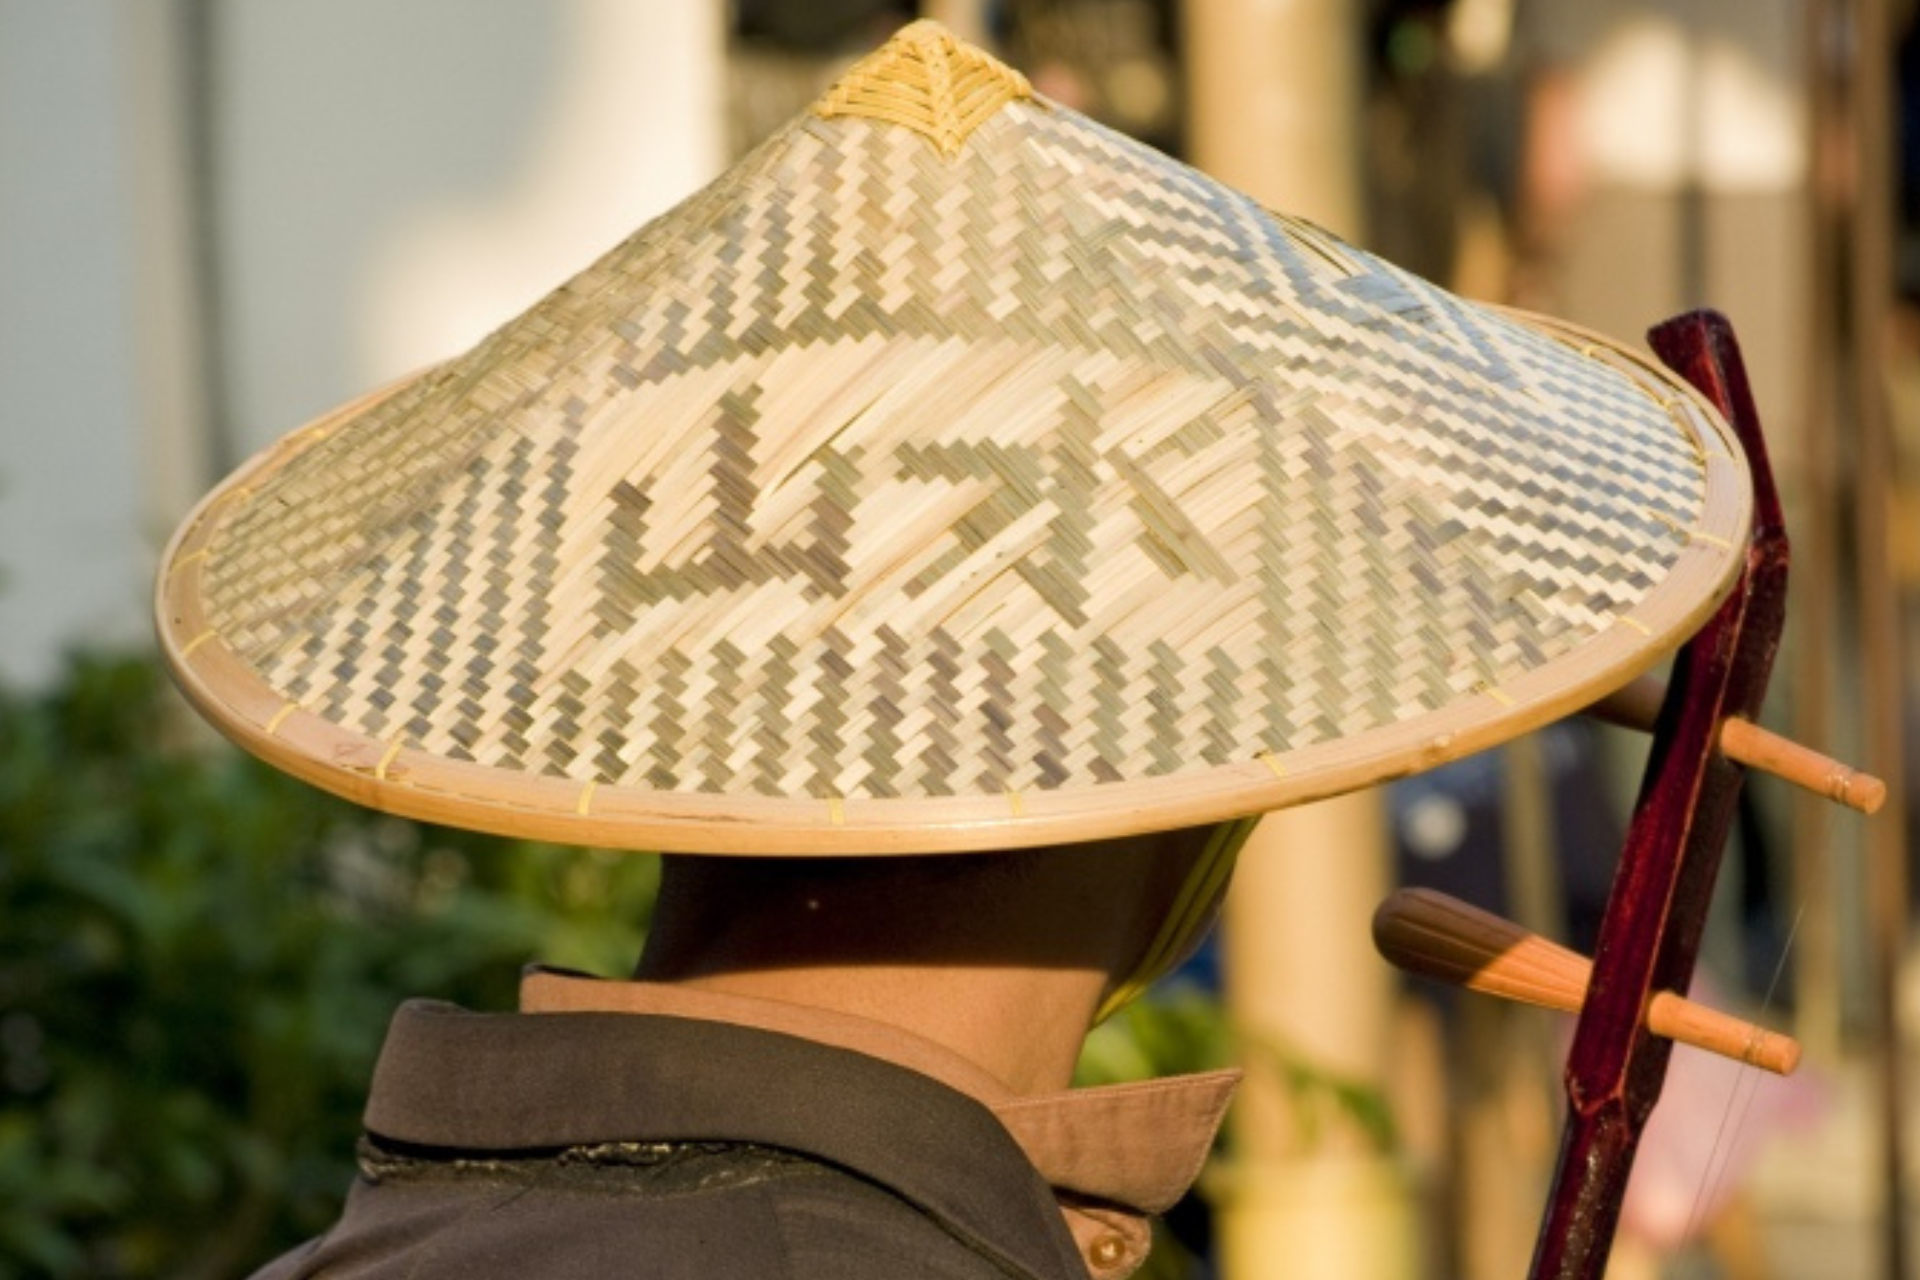 Cabeza de hombre con típico sombrero cónico asiático